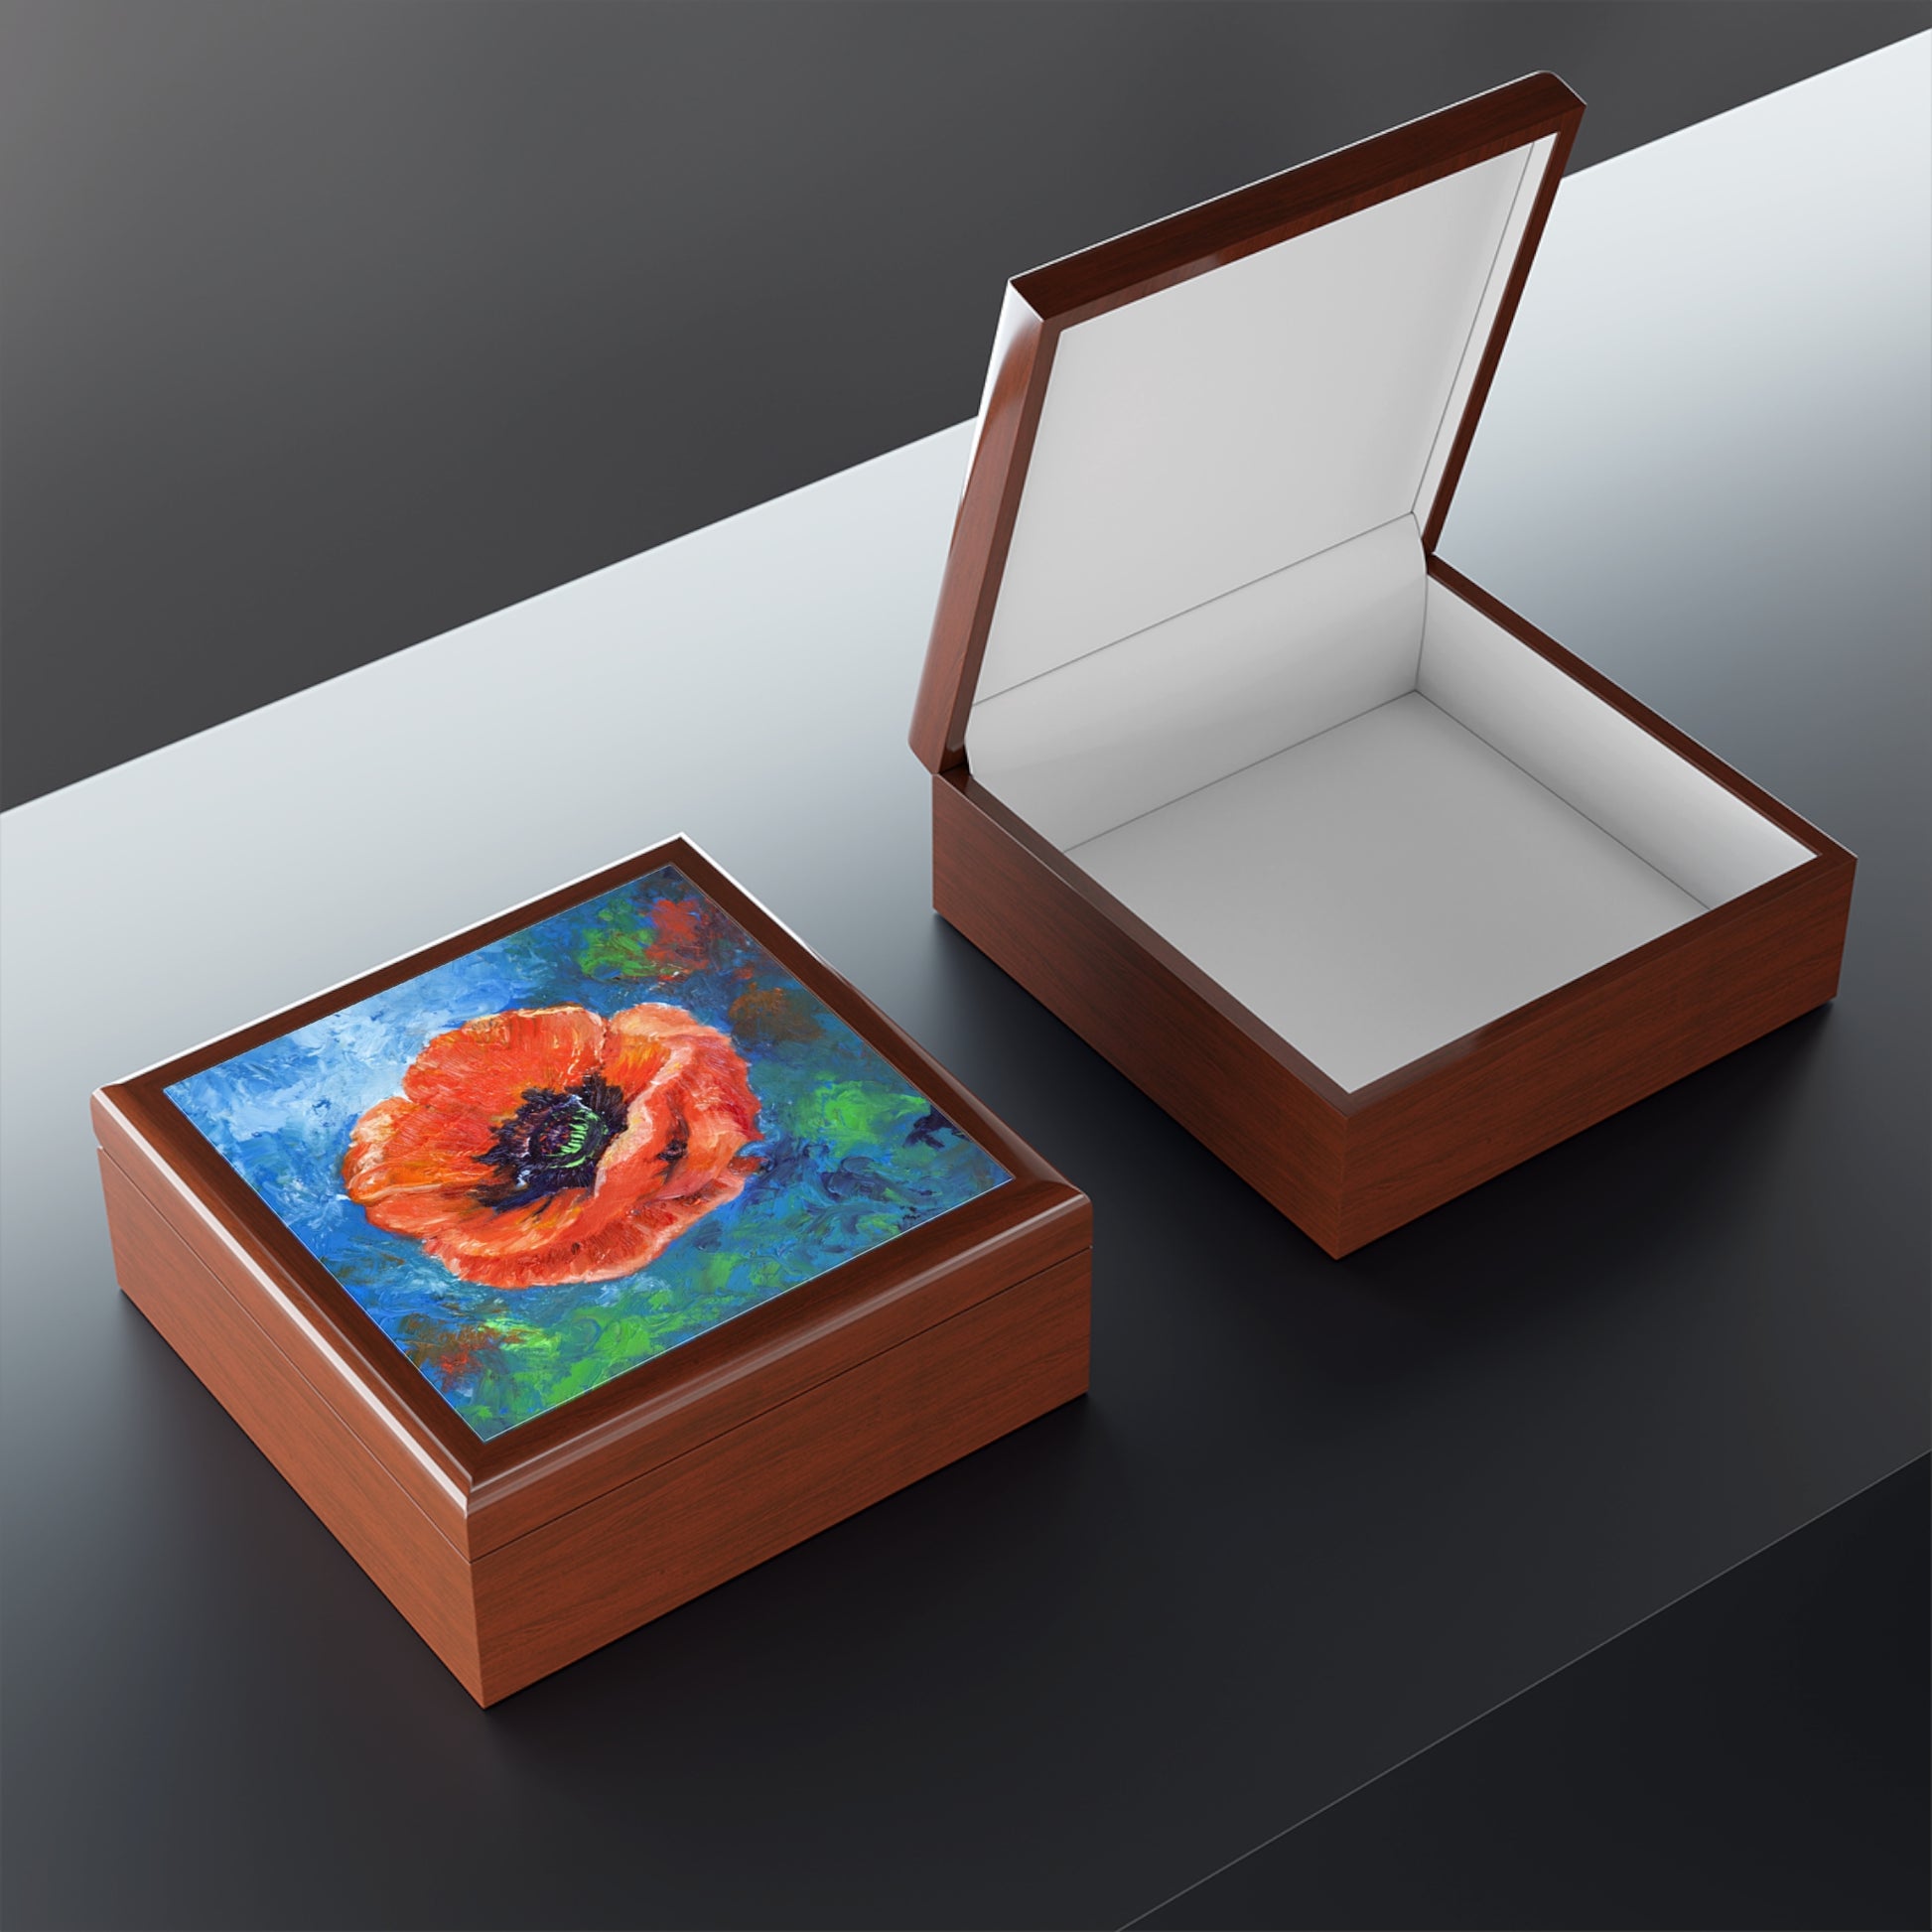 Keepsake/Jewelry Box - Poppy Flower Ceramic Tile Lid open